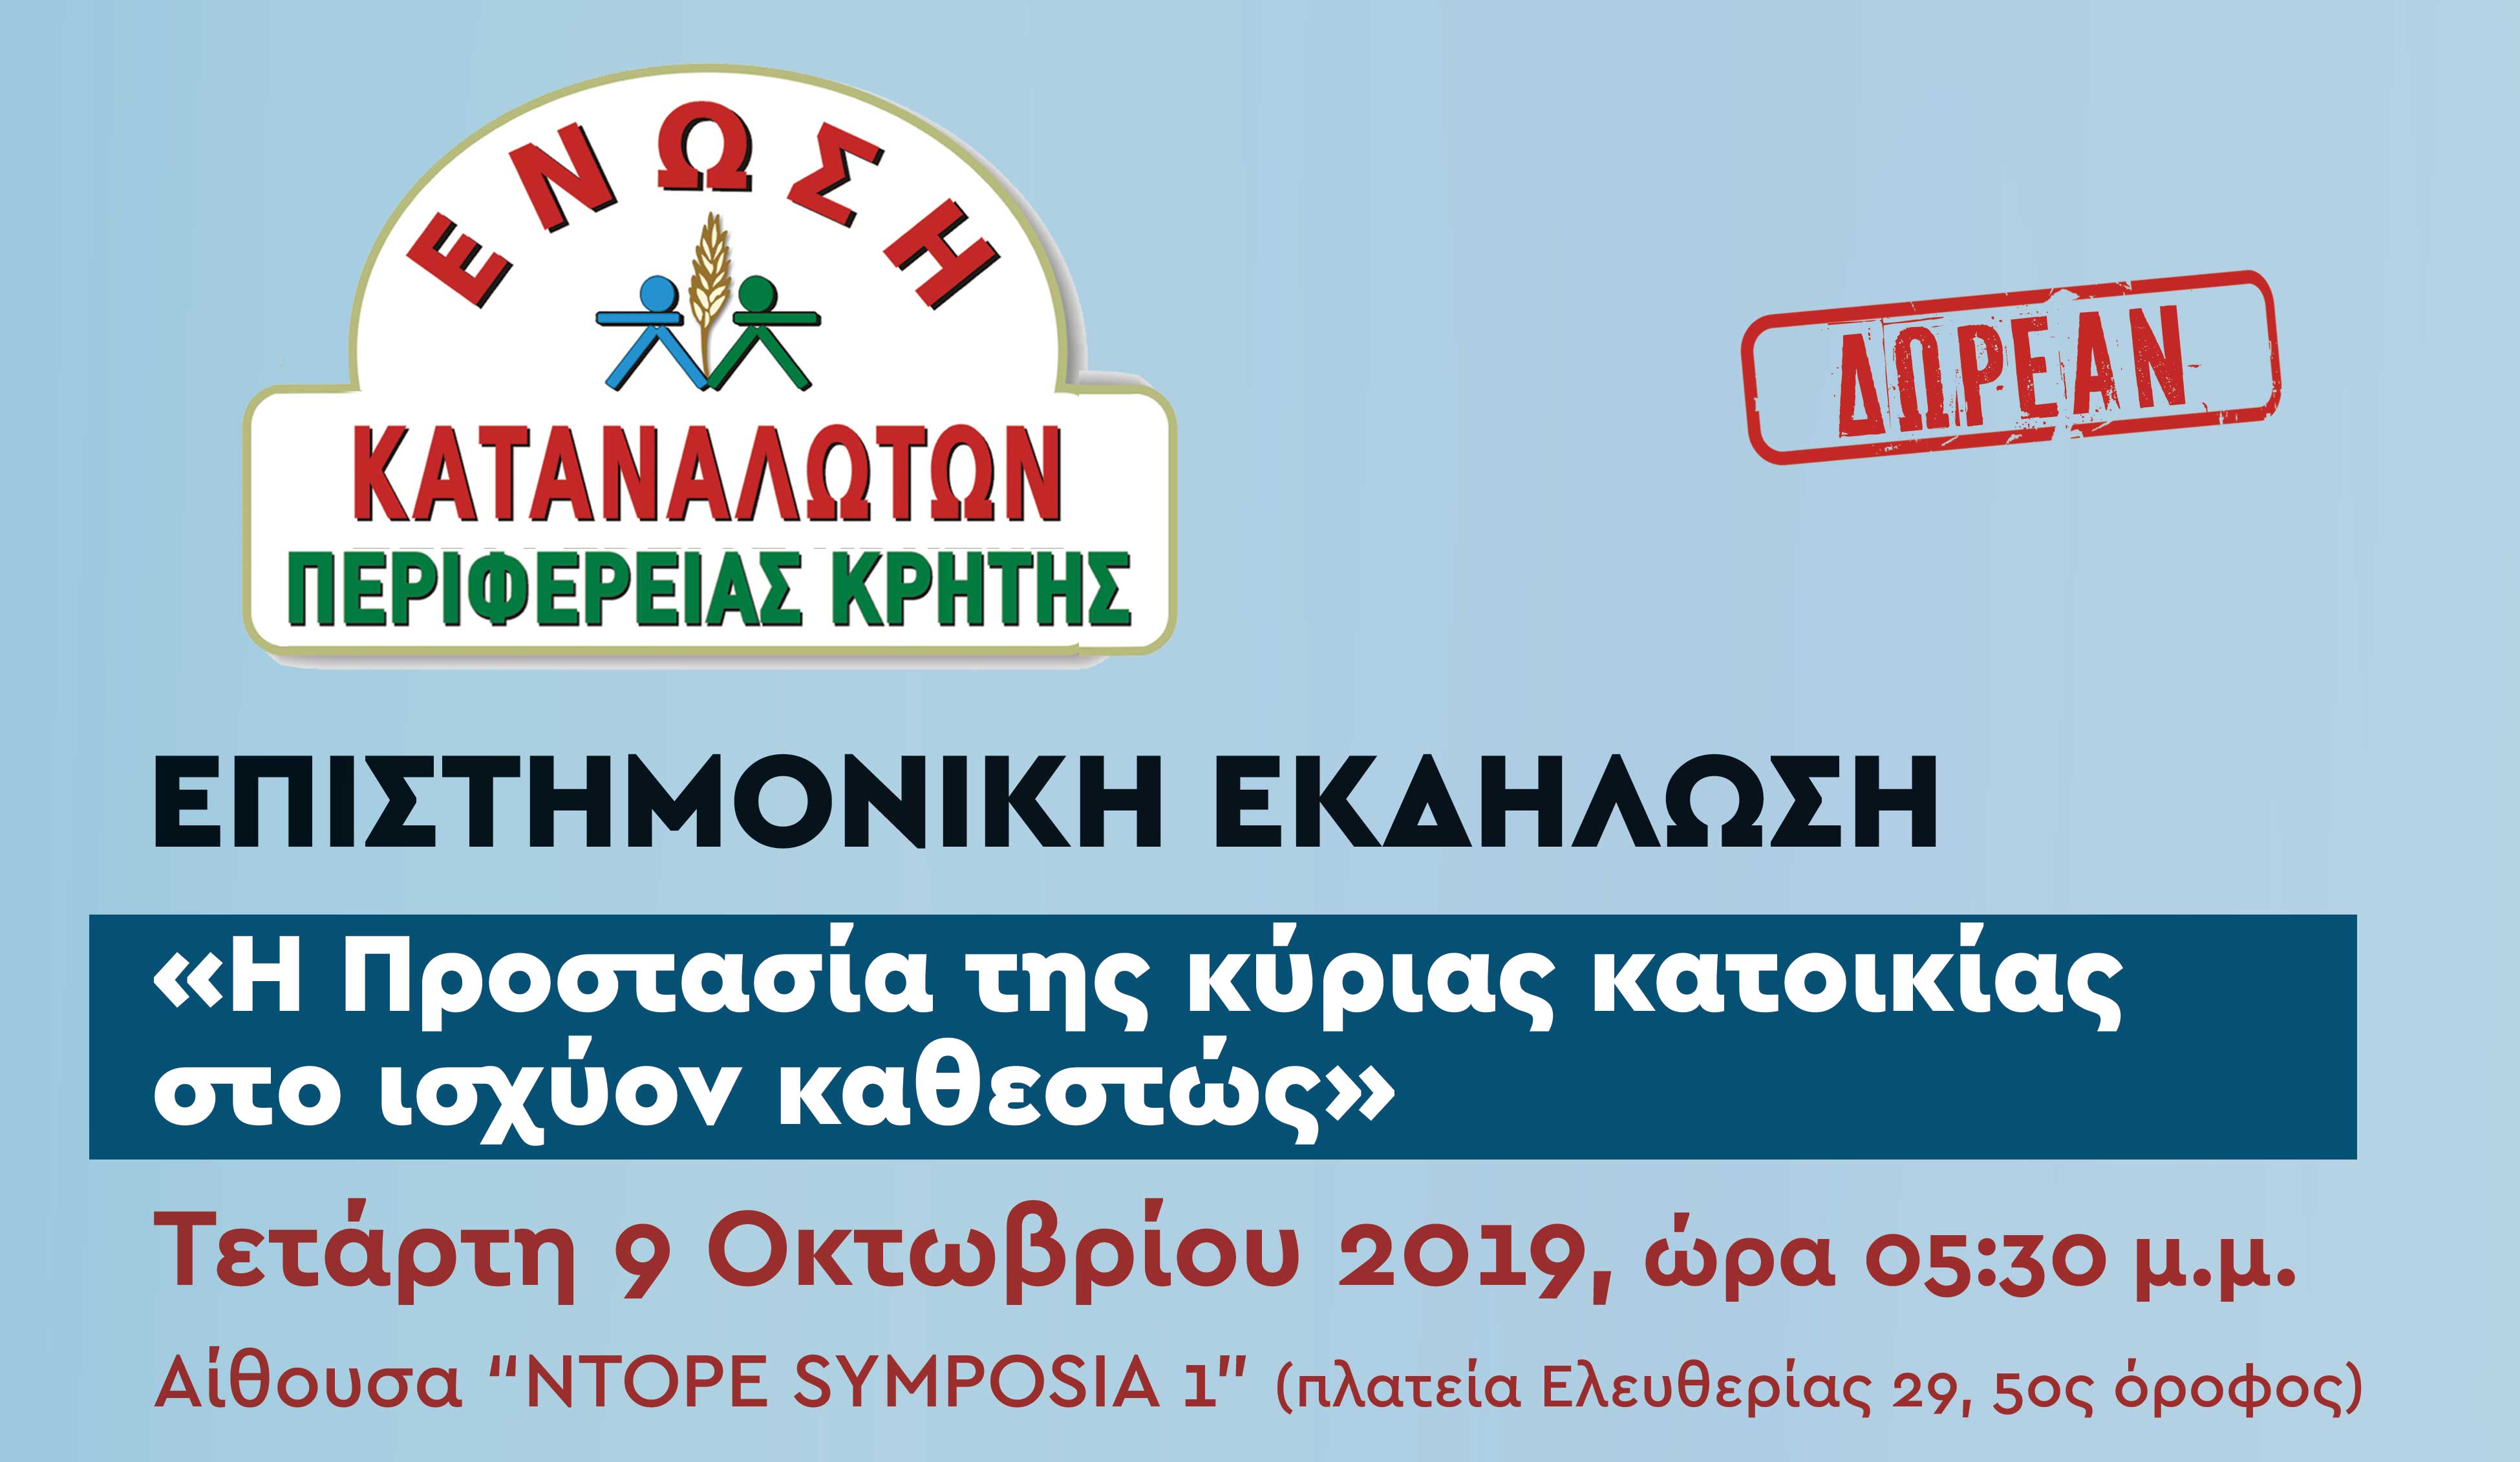 Ενημερωτική εκδήλωση για την αξιοποίηση της ηλεκτρονικής πλατφόρμας από την ΕΝΚΑ Κρήτης